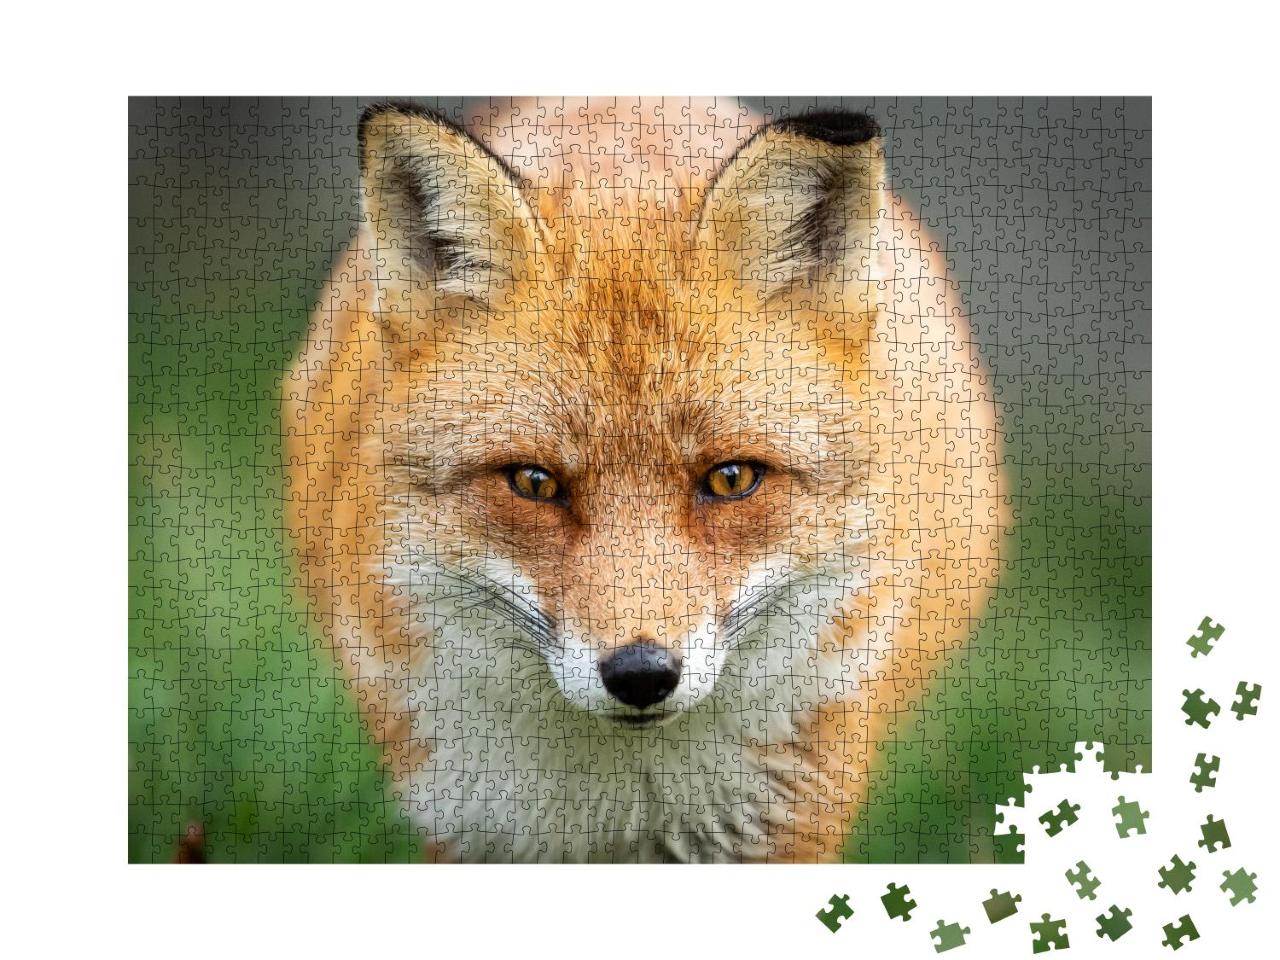 Puzzle 1000 Teile „Rotfuchs auf der Jagd“